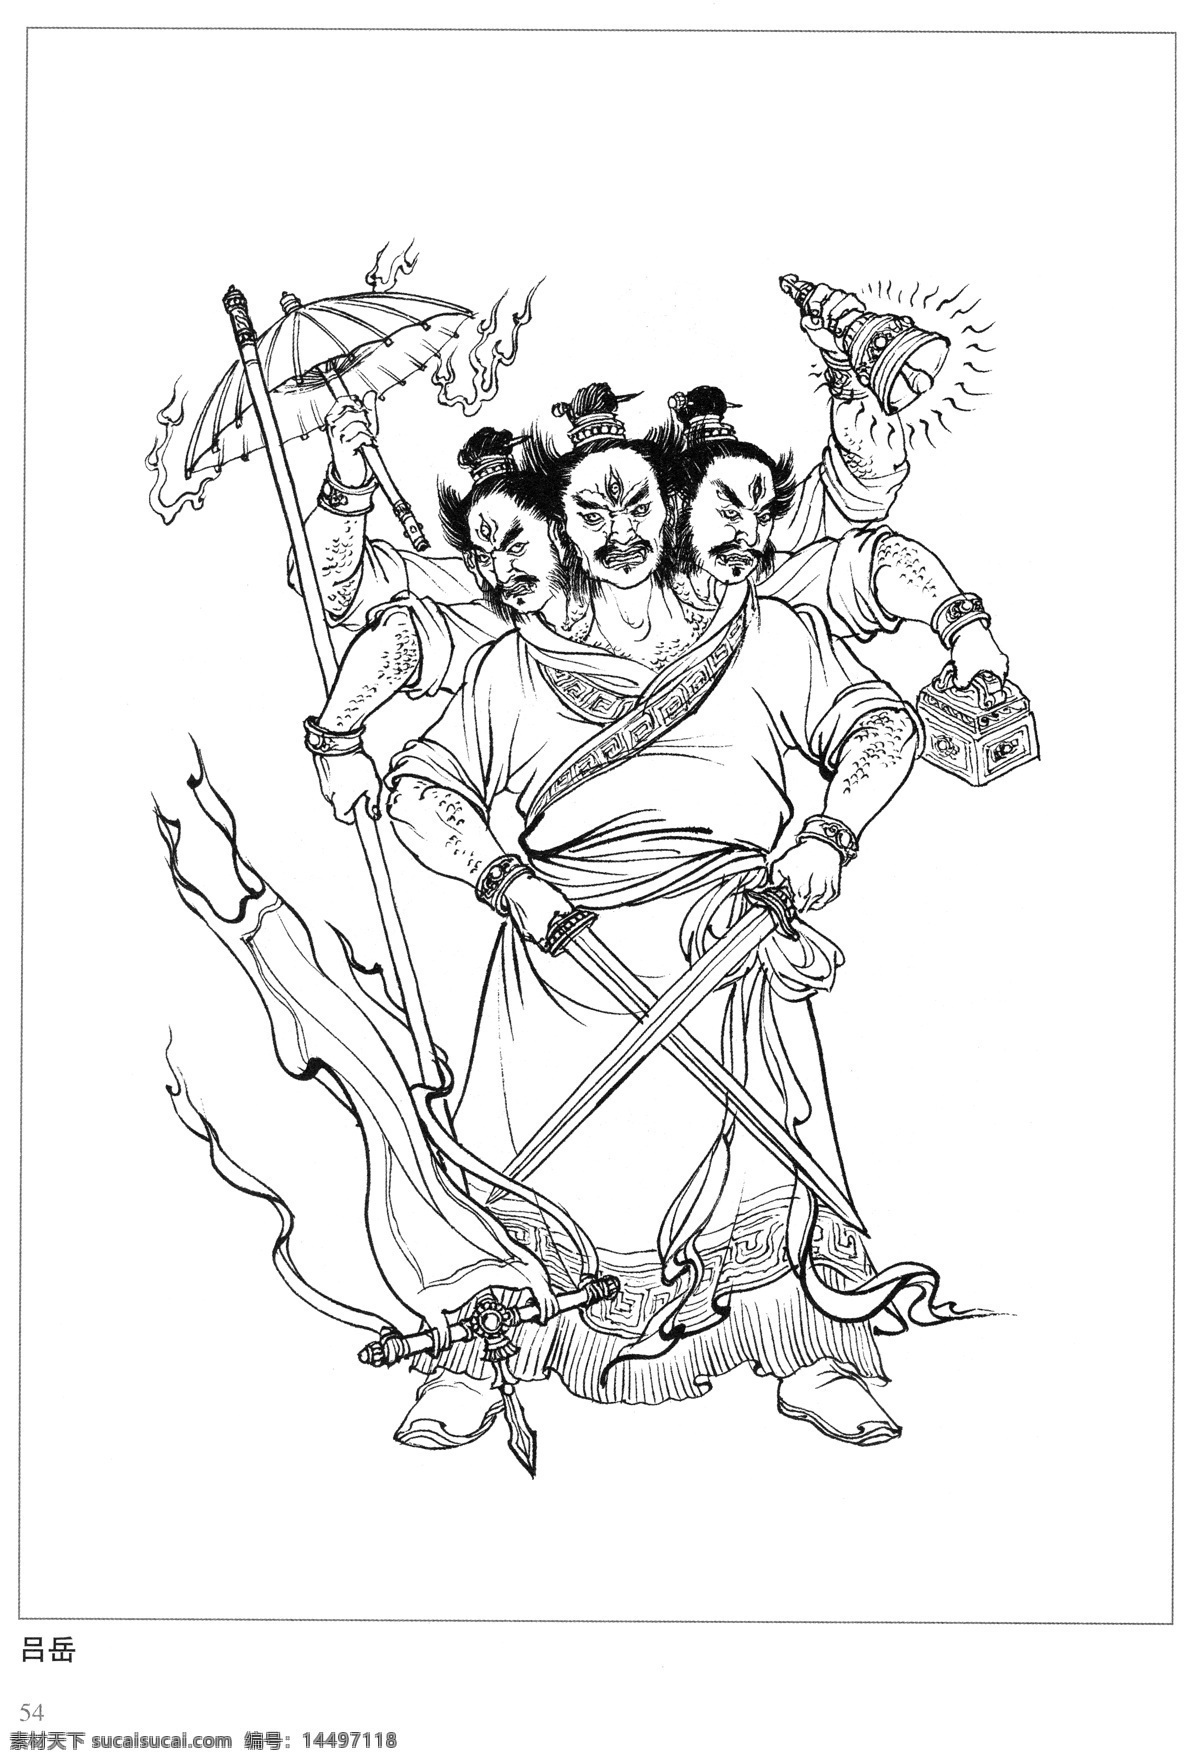 吕岳 封神演义 古代 神仙 白描 人物 图 文化艺术 传统文化